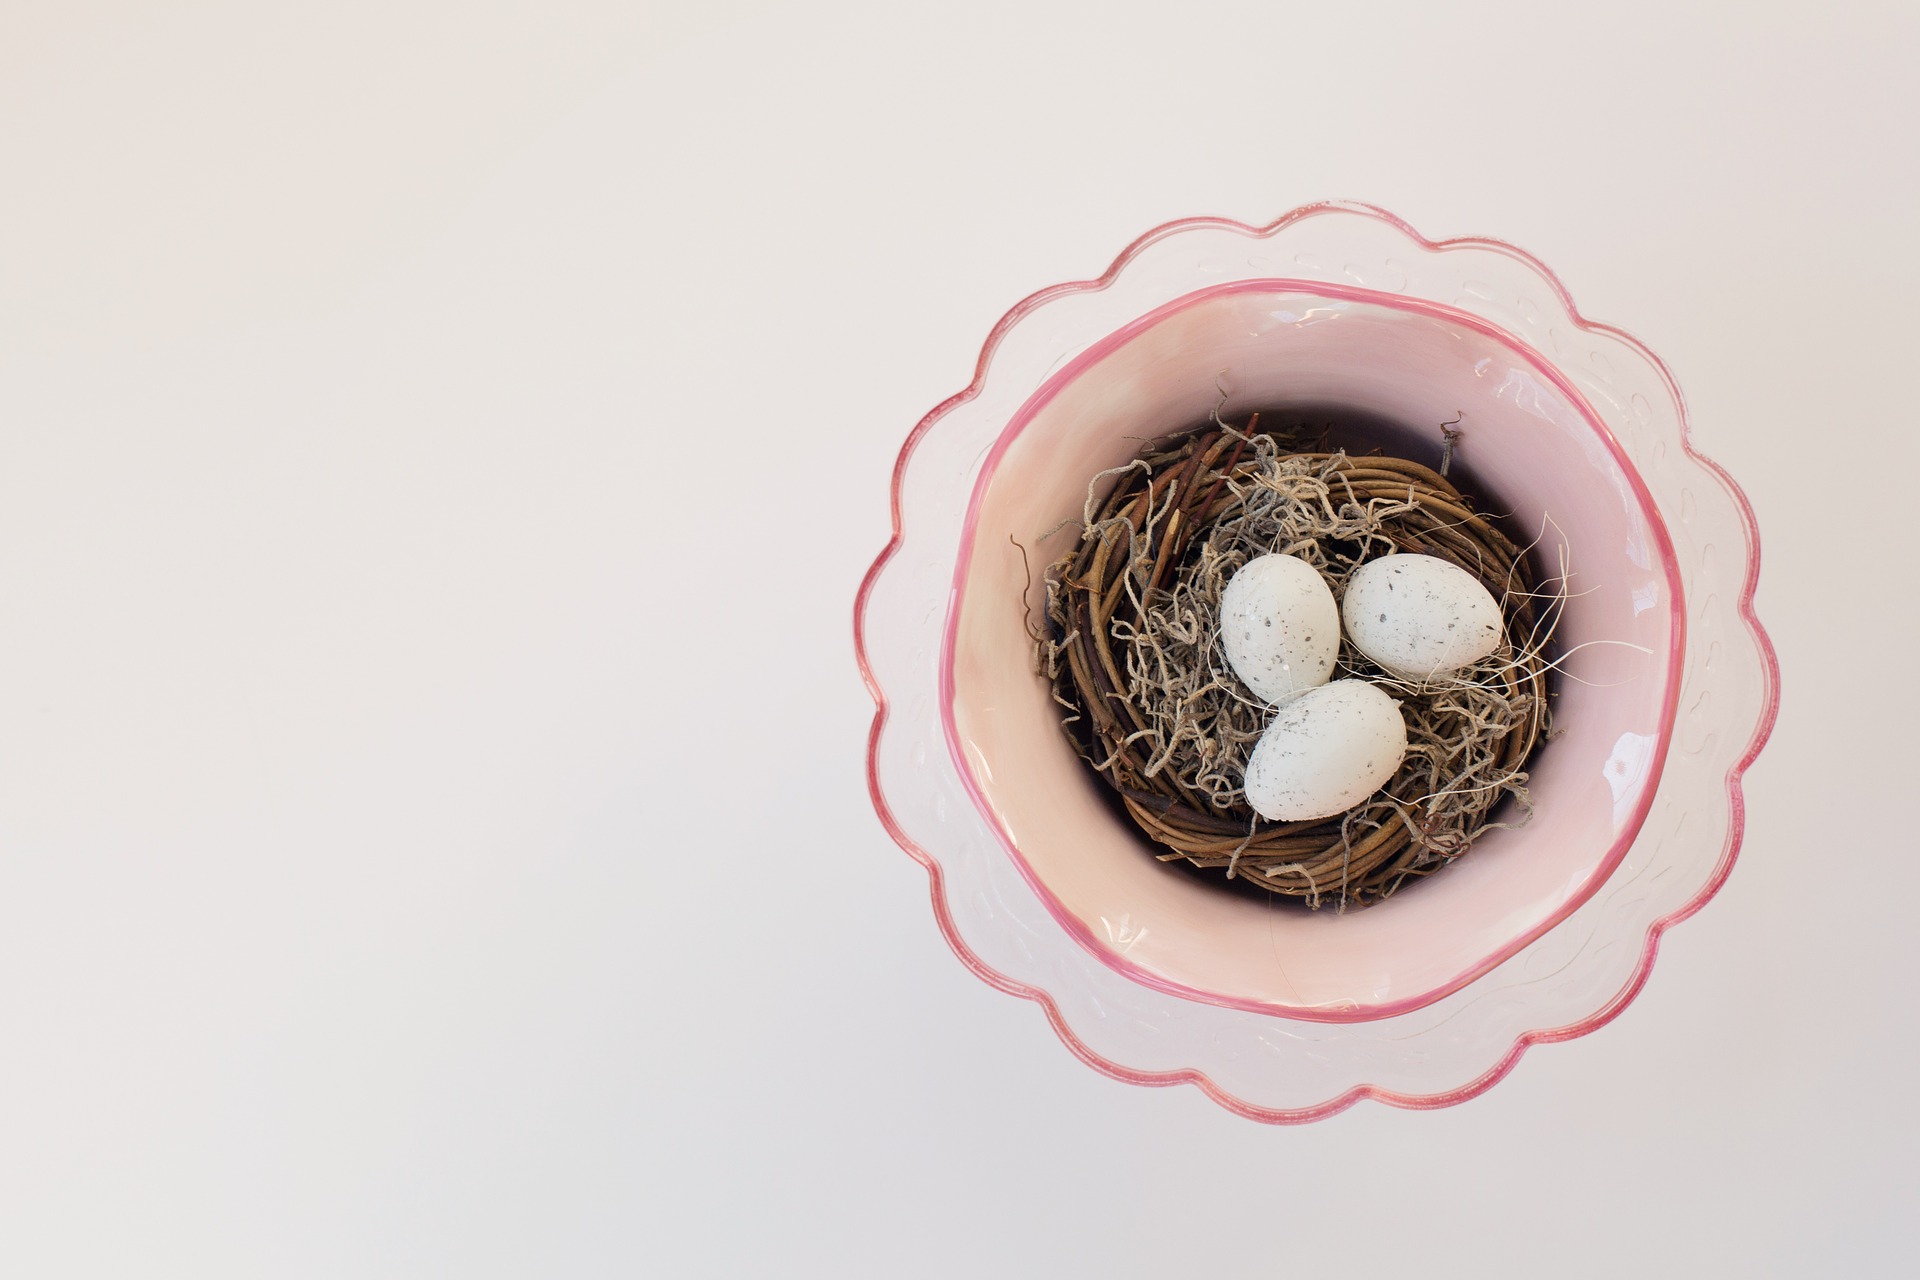 Download mobile wallpaper Animal, Egg, Nest for free.